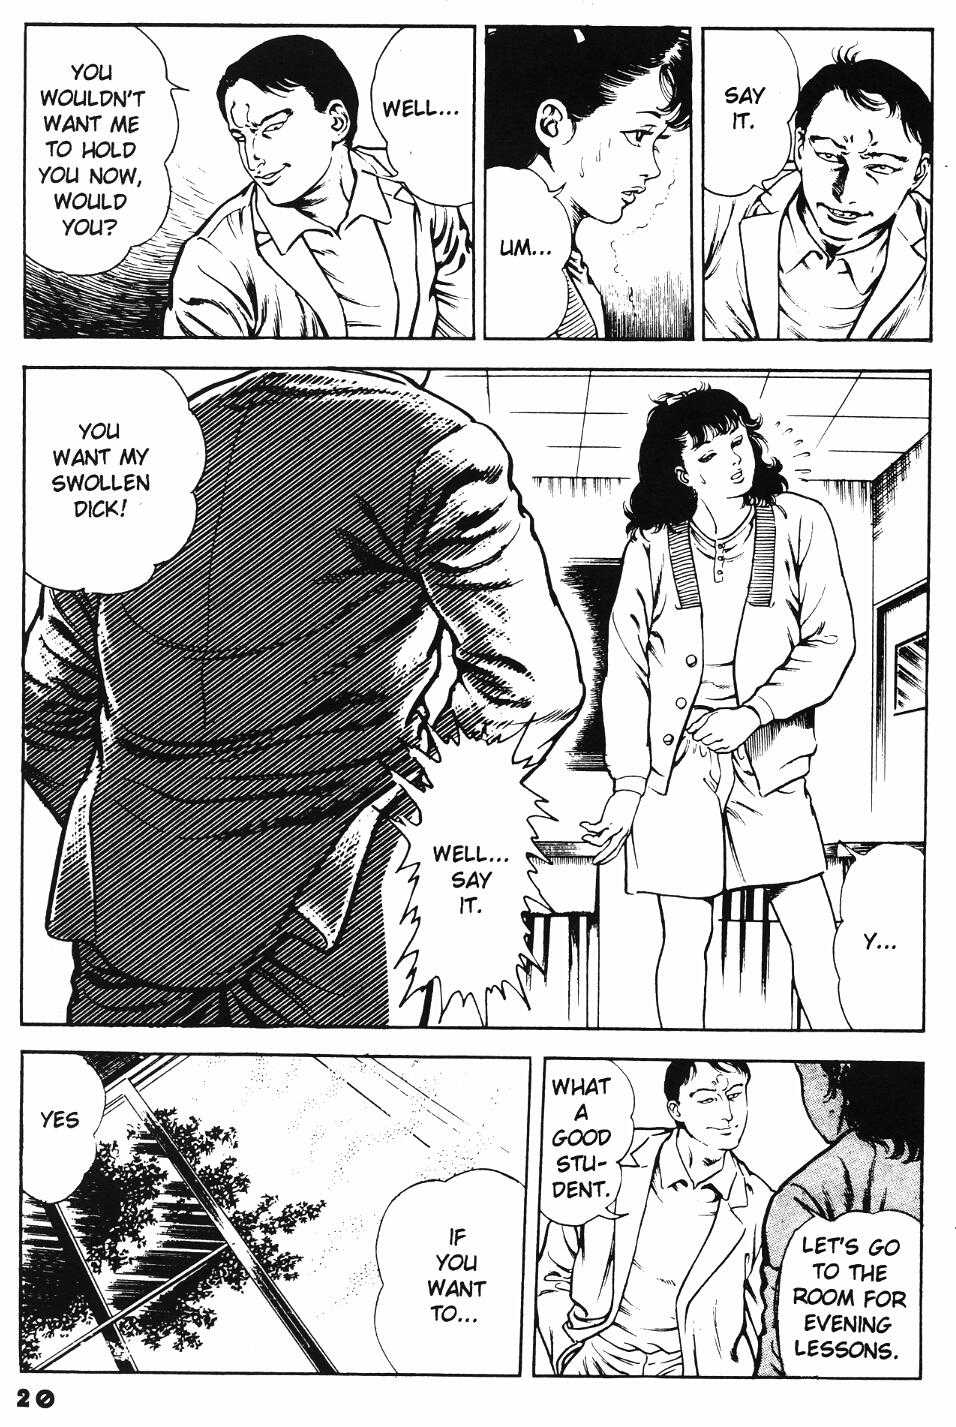 [Manga18][Toshio Maeda] Urotsukidoji - Return of the Overfiend No 1 (english) 